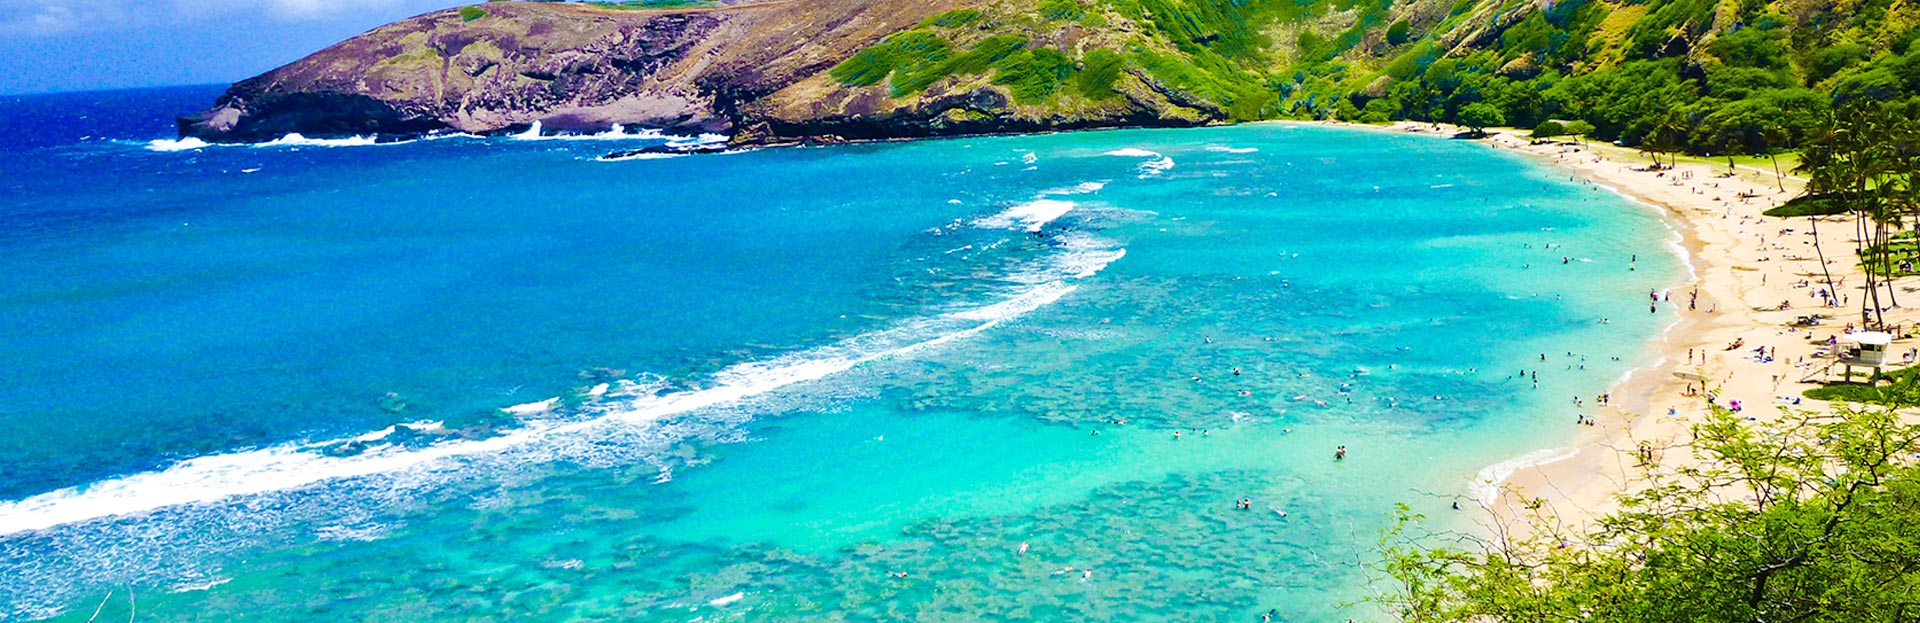 Hawaii Coast 2